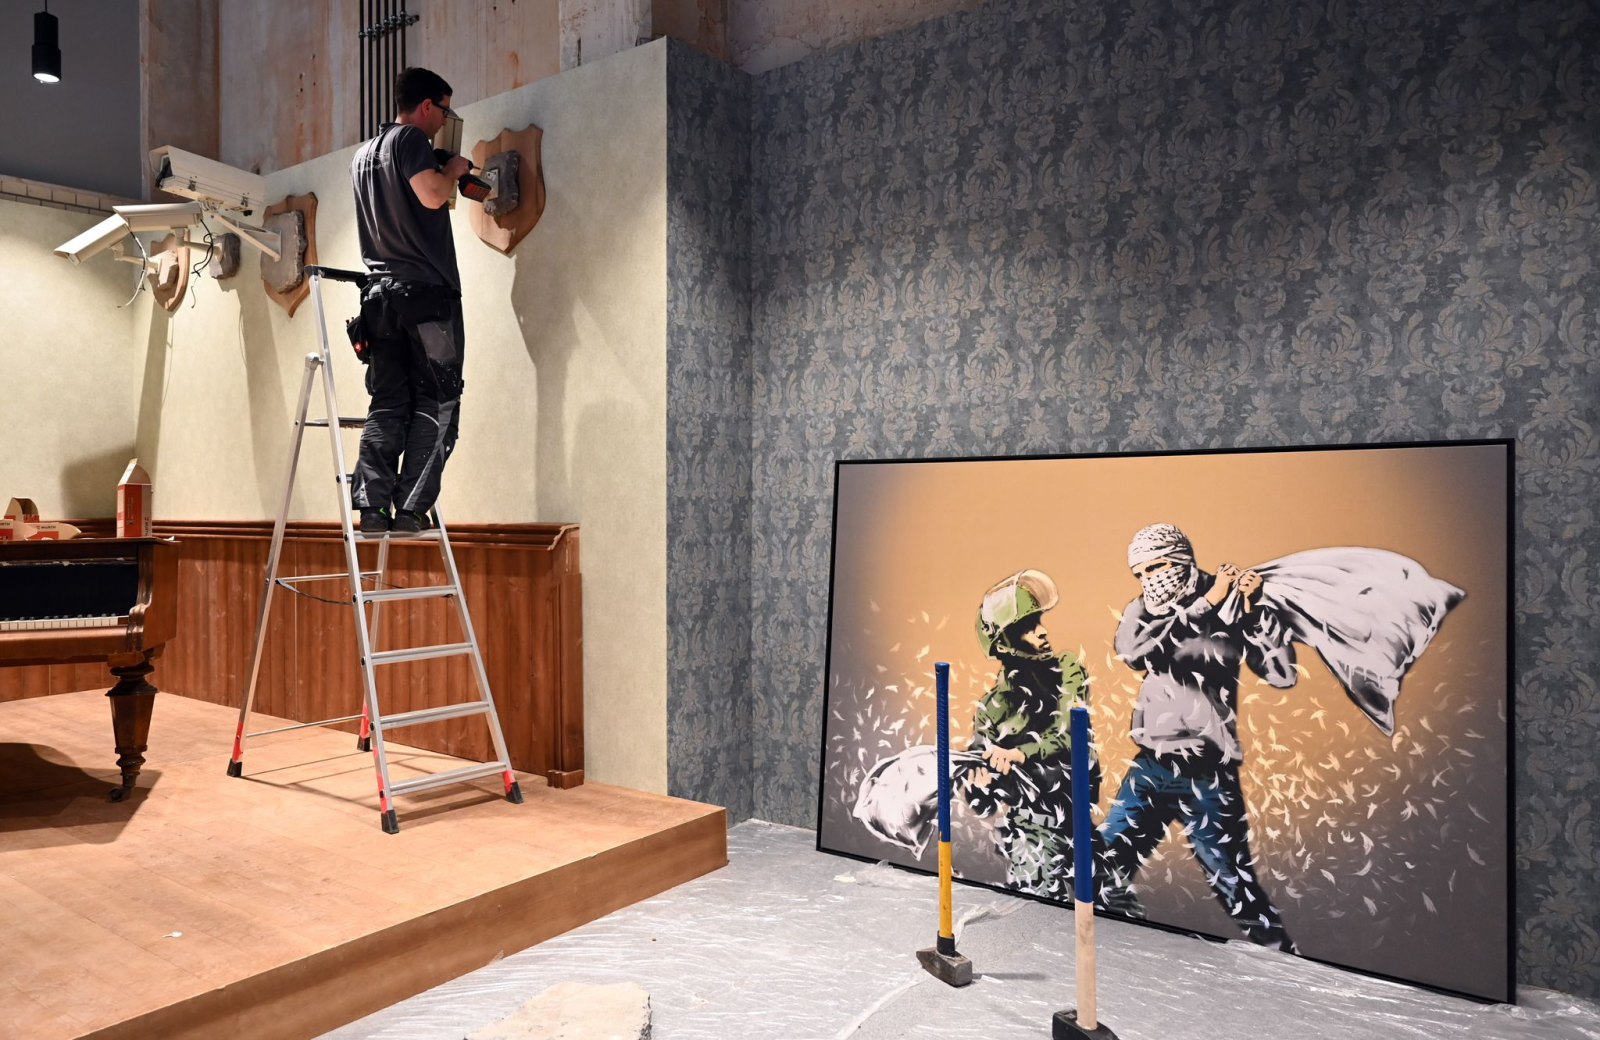 Videokameras werden zur Dekoration neben dem Werk "Pillow Fight" von Banksy angebracht.